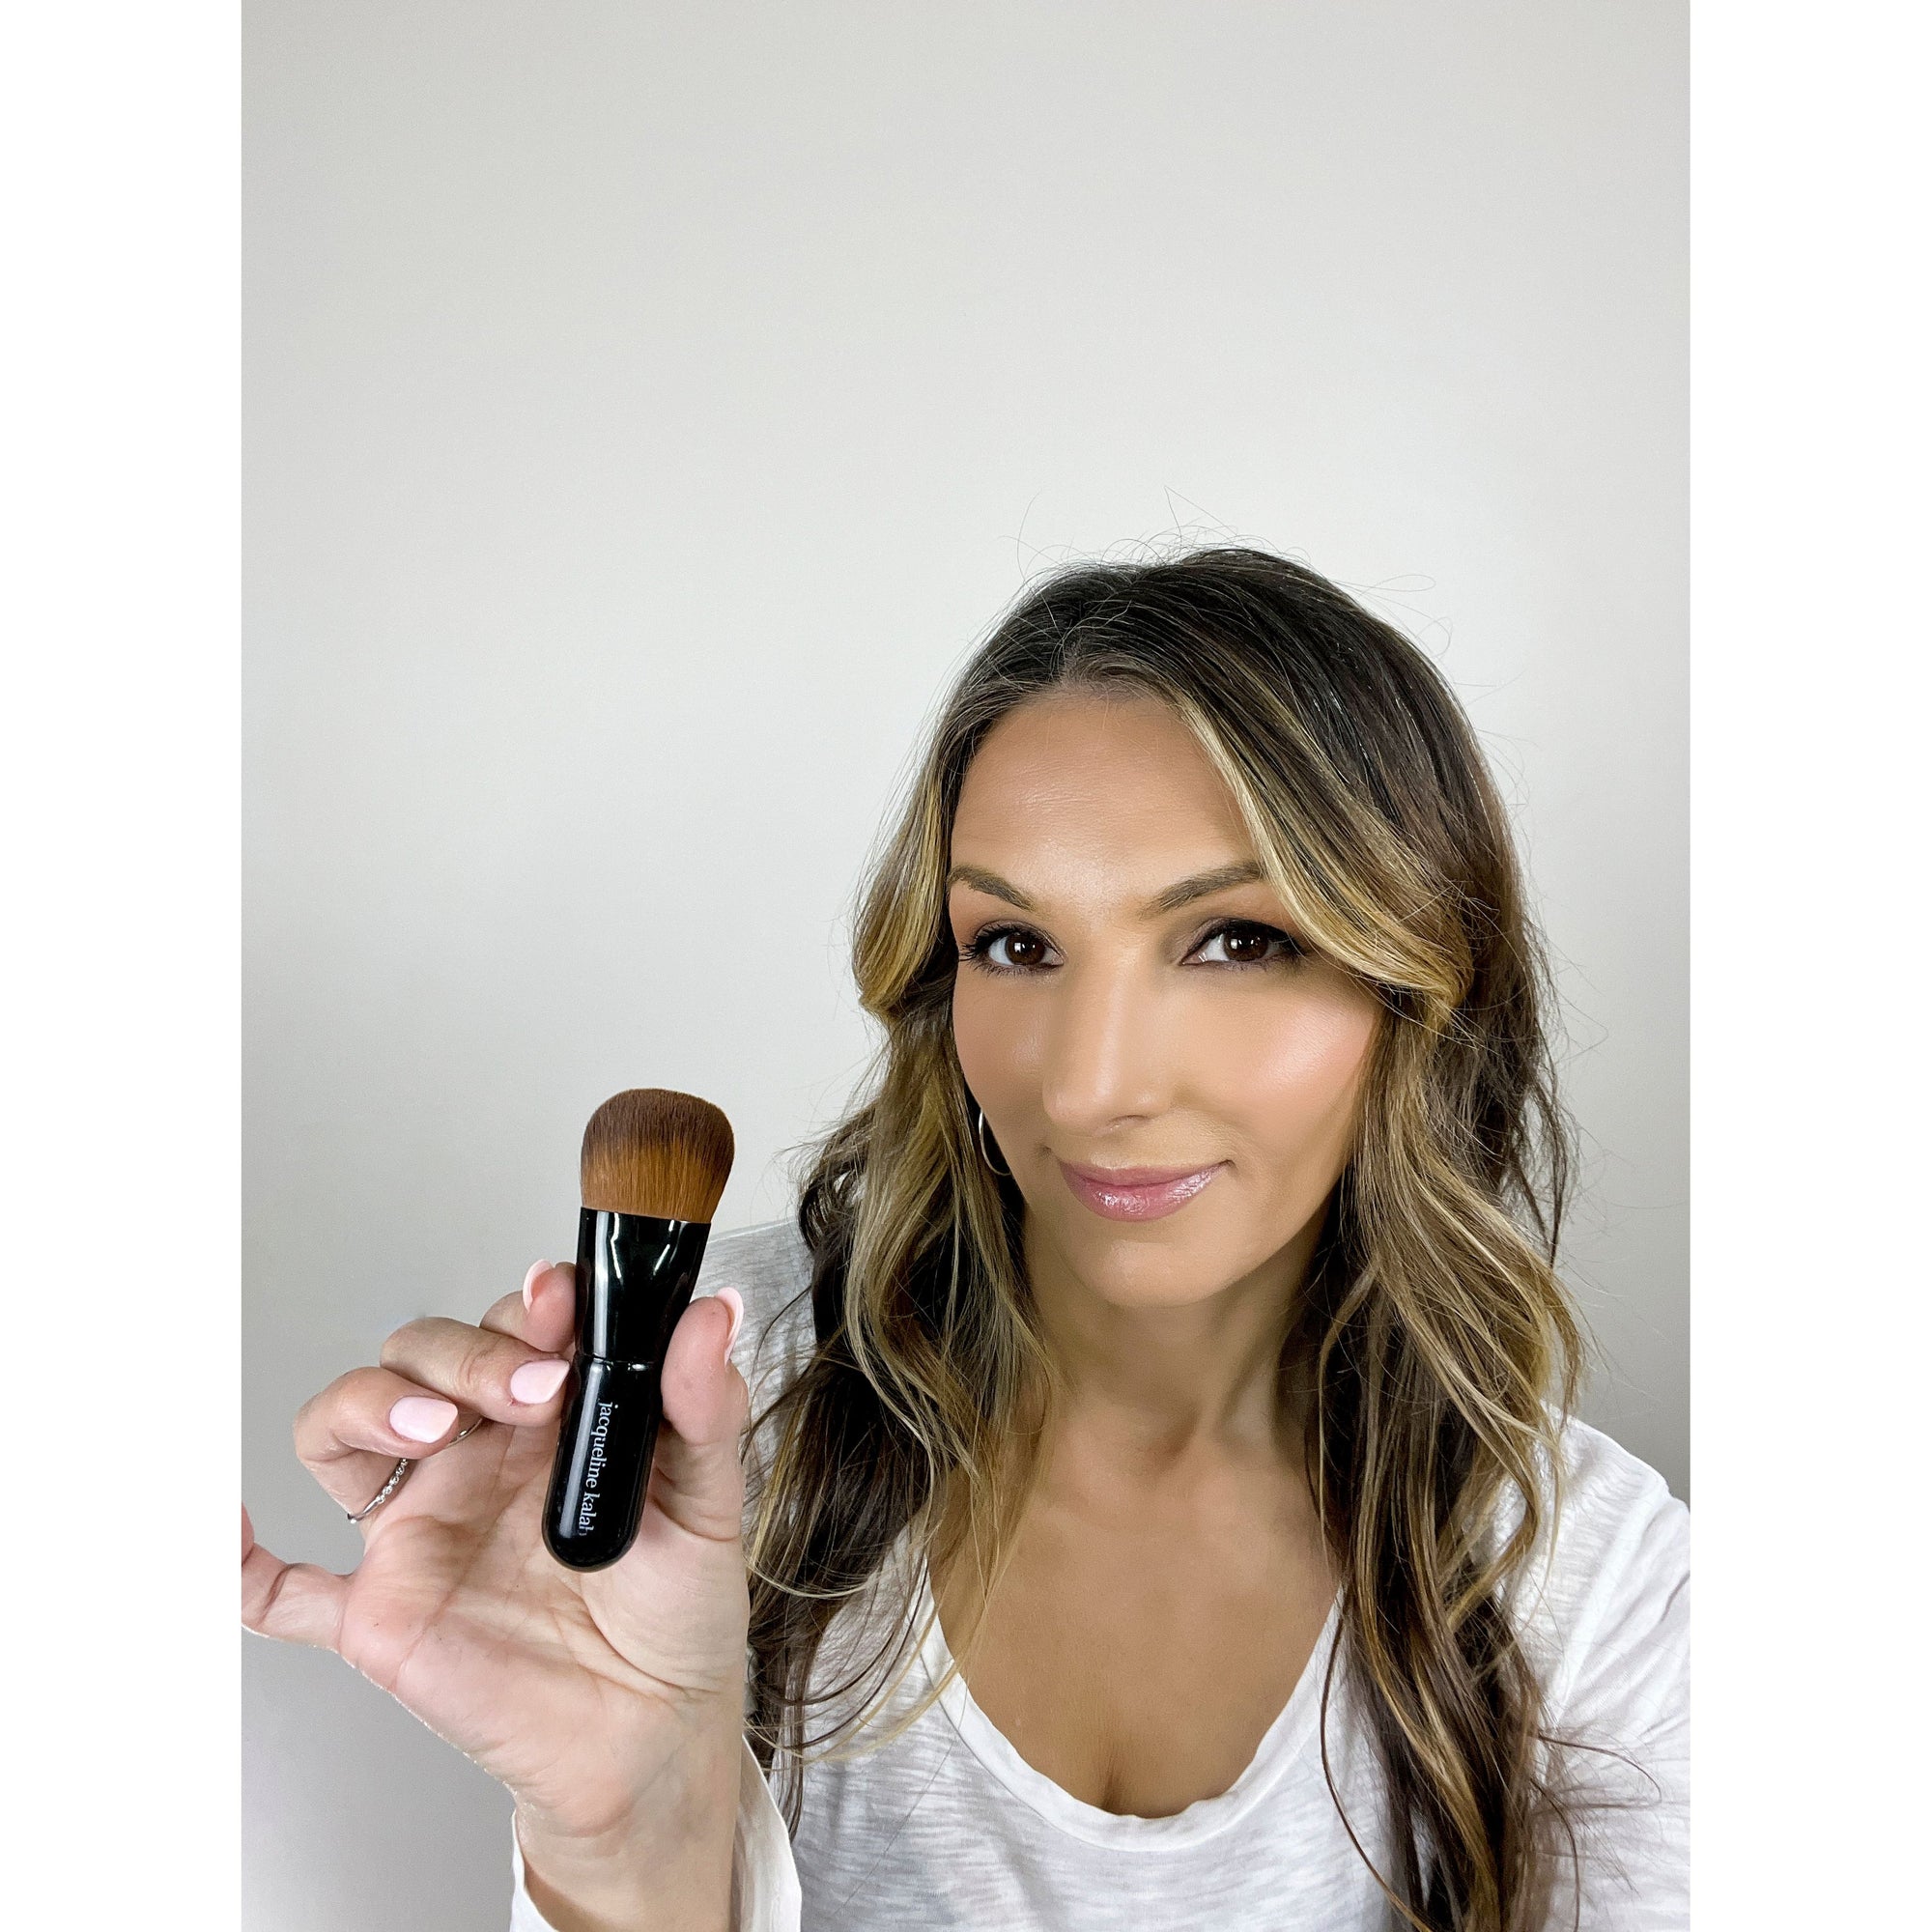 Magic Foundation Brush - the Most Addictive, Useful, Multi-use Makeup Brush by Jacqueline Kalab - MyMakeup.Store by Jacqueline Kalab